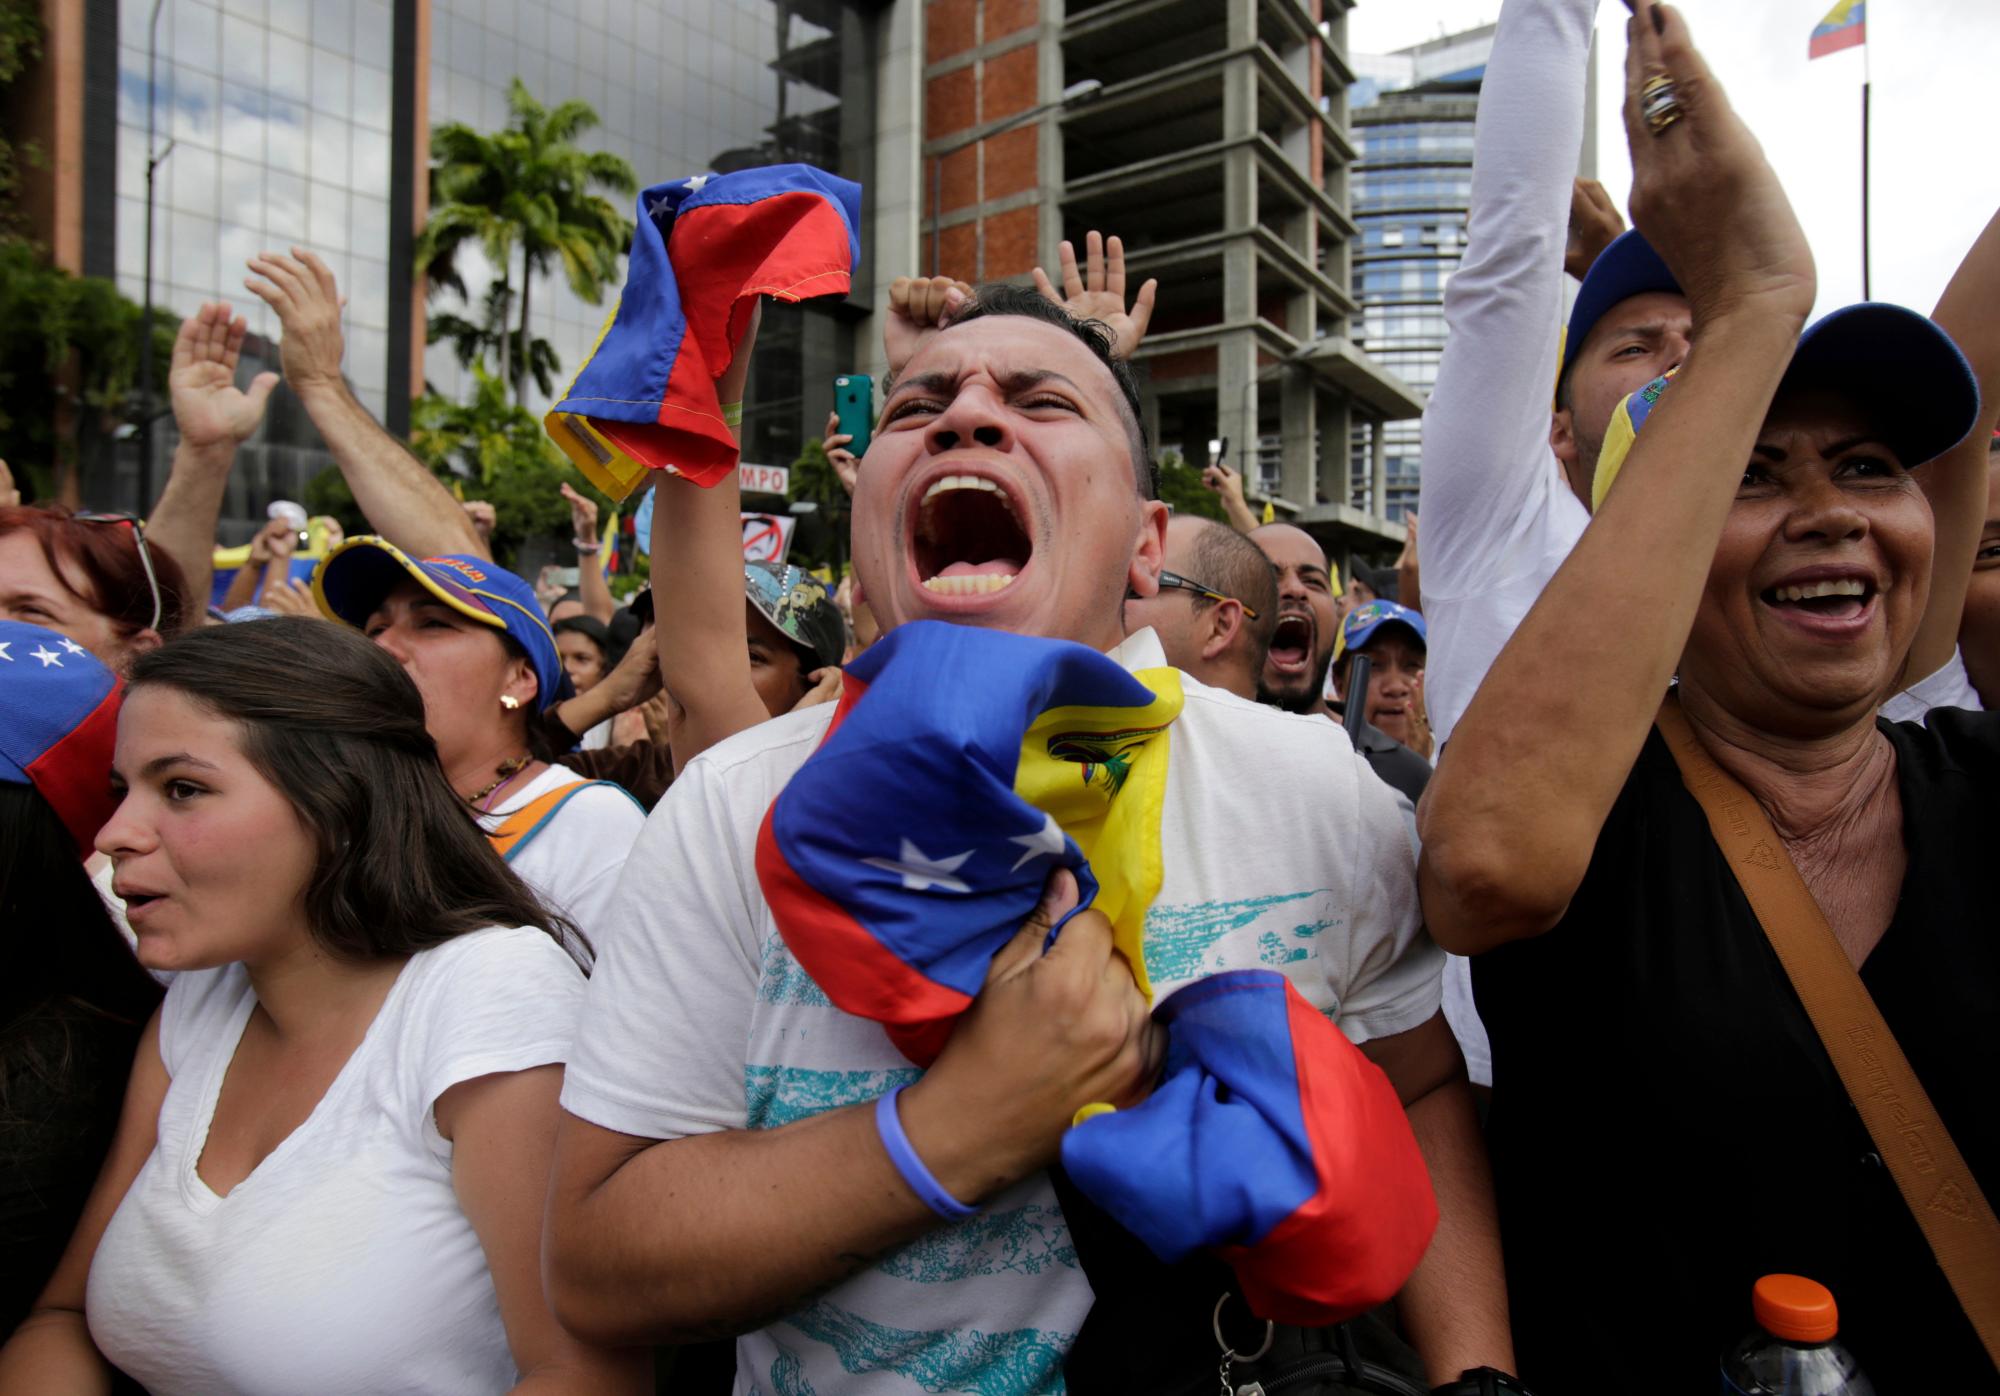 Los manifestantes antigubernamentales aplauden a Juan Guaido, jefe del congreso de oposición de Venezuela, que se declara presidente interino del país sudamericano hasta que se pueda convocar una nueva elección, en un mitin que exige la renuncia del presidente Nicolás Maduro en Caracas, Venezuela, el miércoles 23 de enero de 2019.